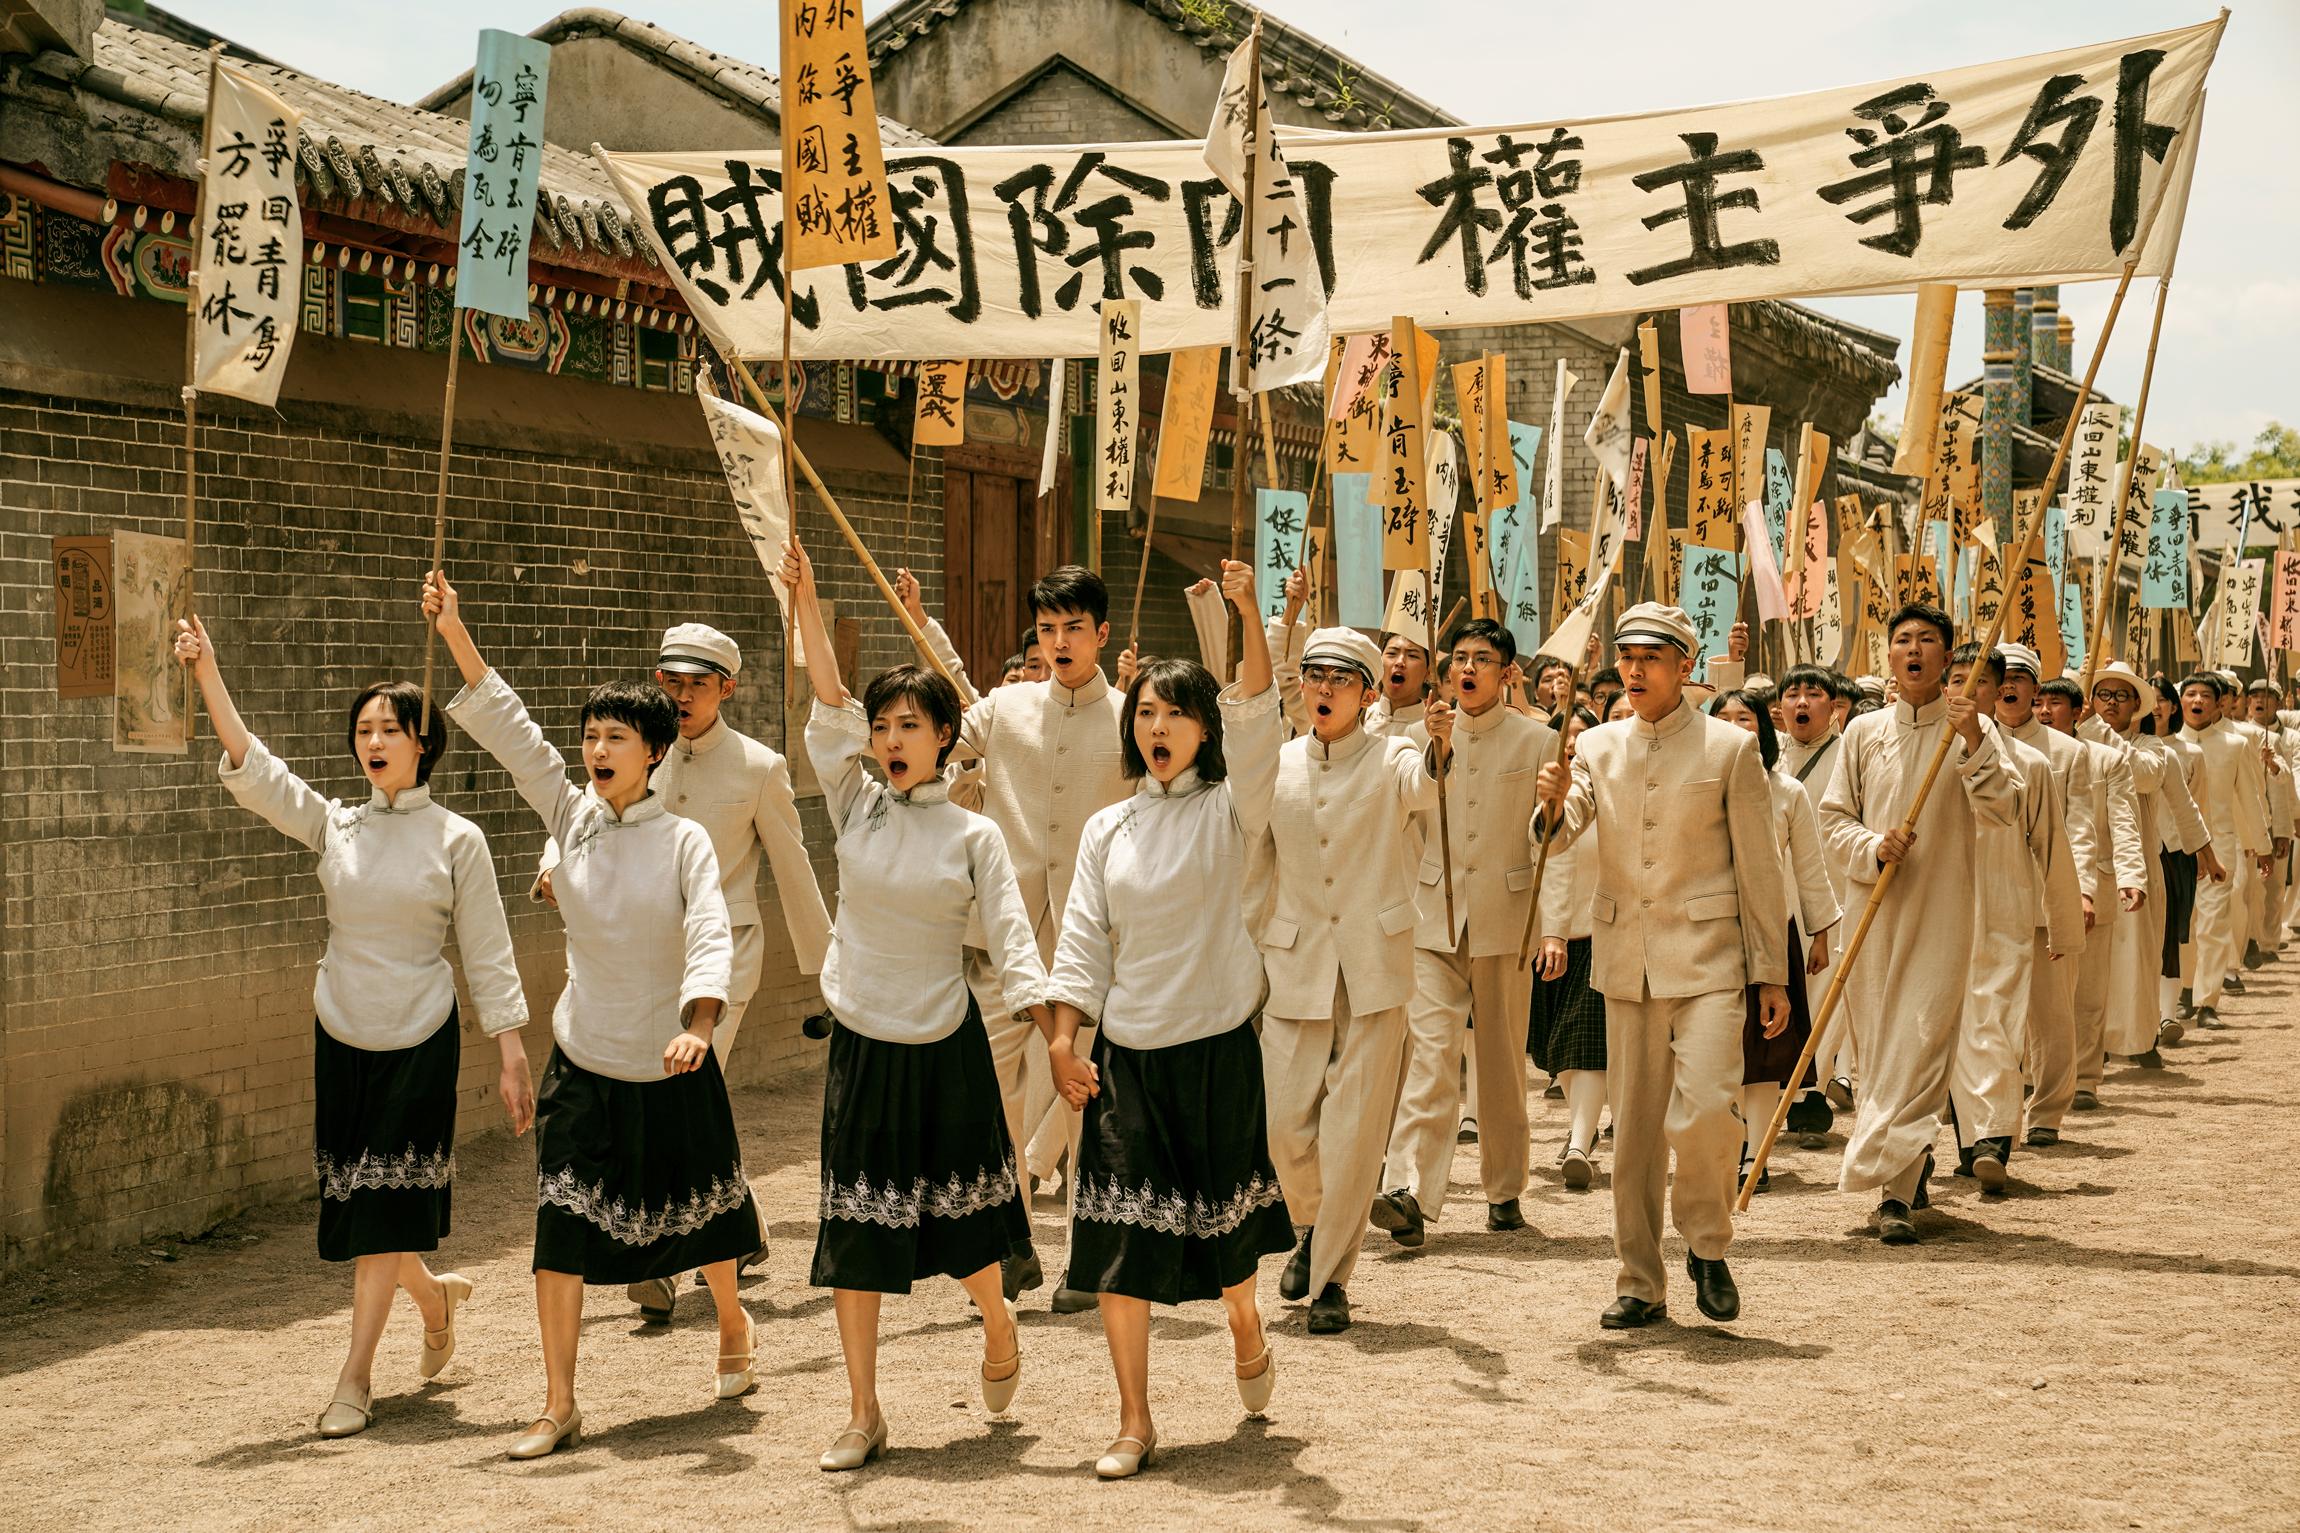 为什么上海国际电影节开幕影片选择了国产主旋律电影《1921》?